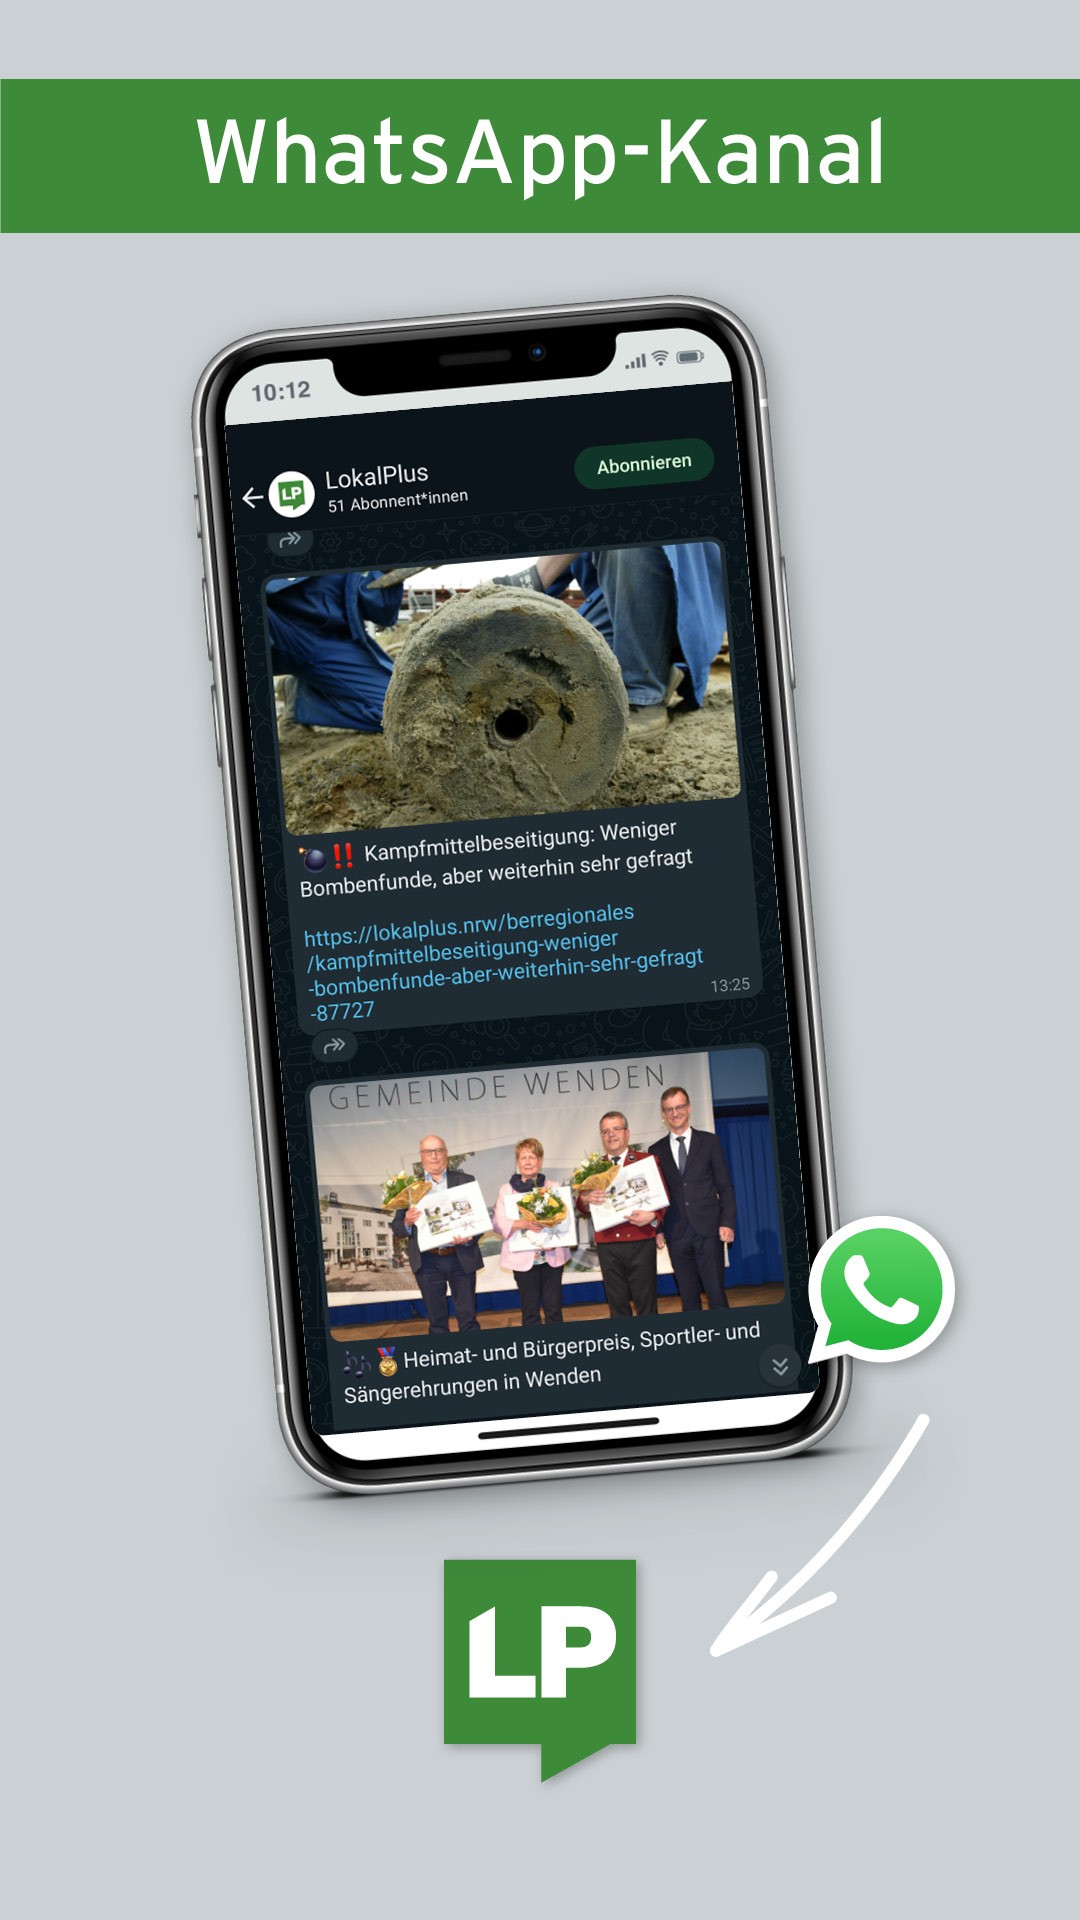 Die Nachrichten-App LokalPlus hat jetzt auch einen Kanal bei WhatsApp. von Ralph Schneider